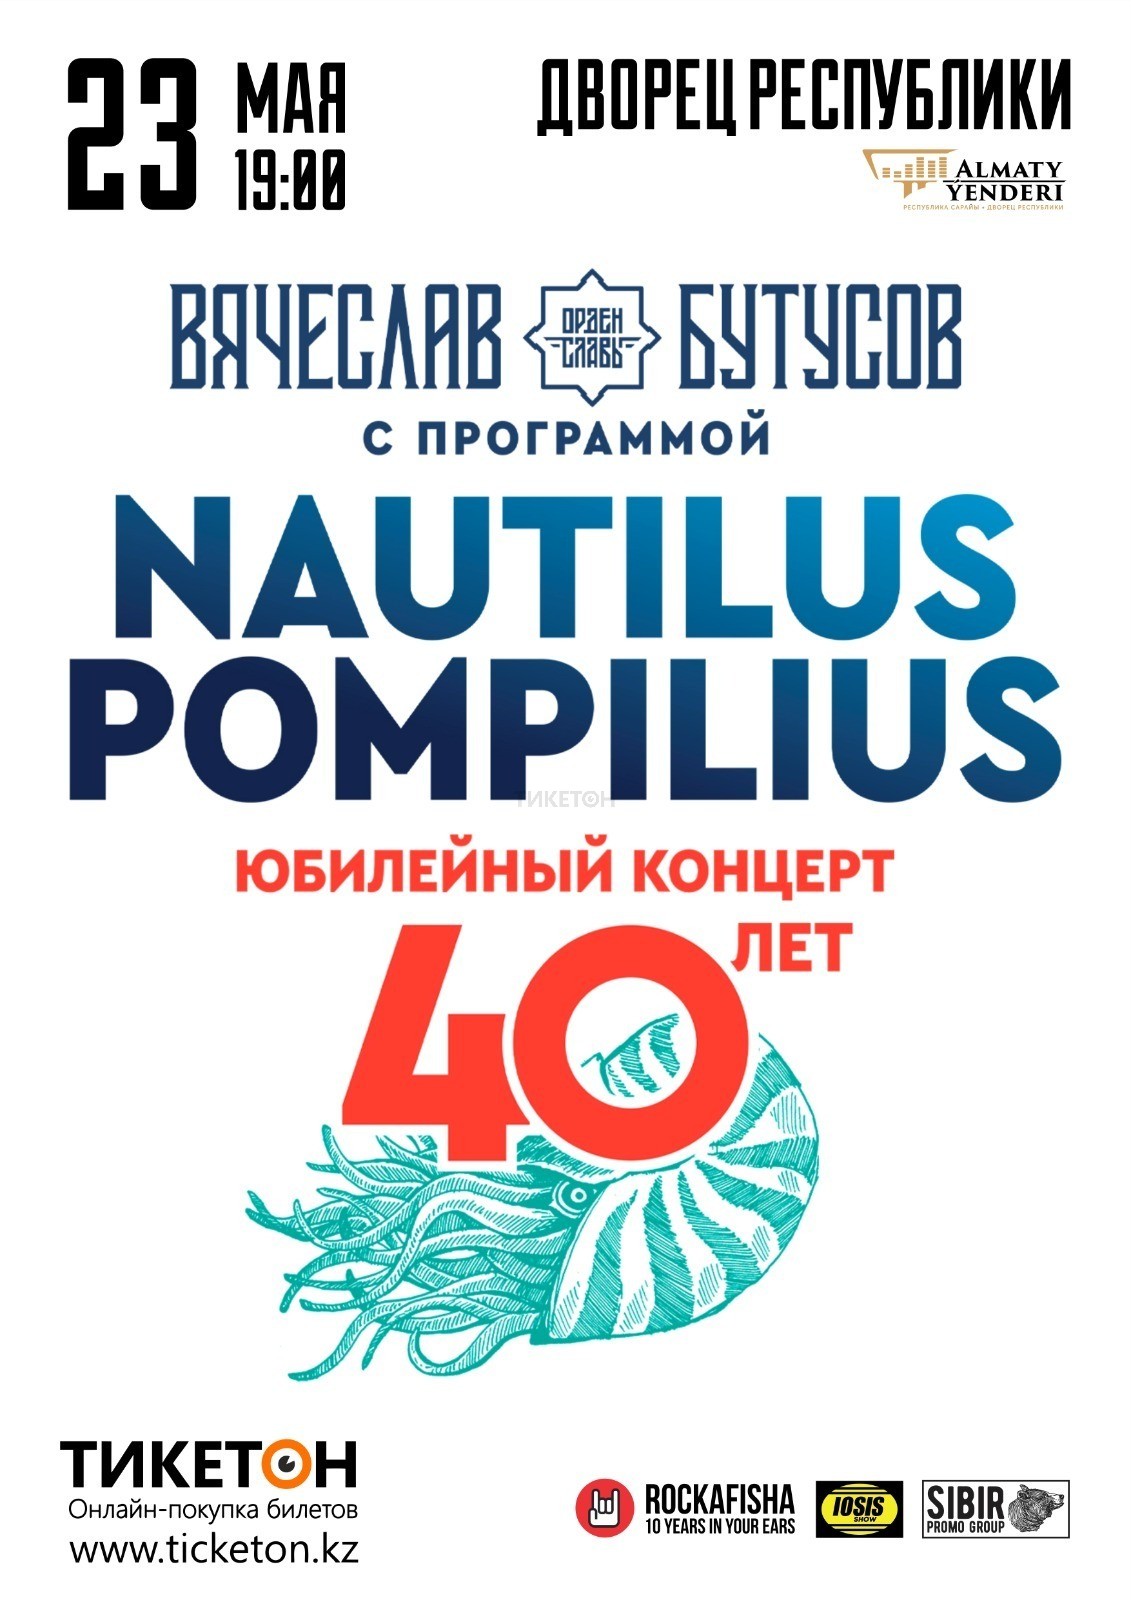 Юбилейный концерт Nautilus Pompilus. 40 лет. Вячеслав Бутусов в Алматы